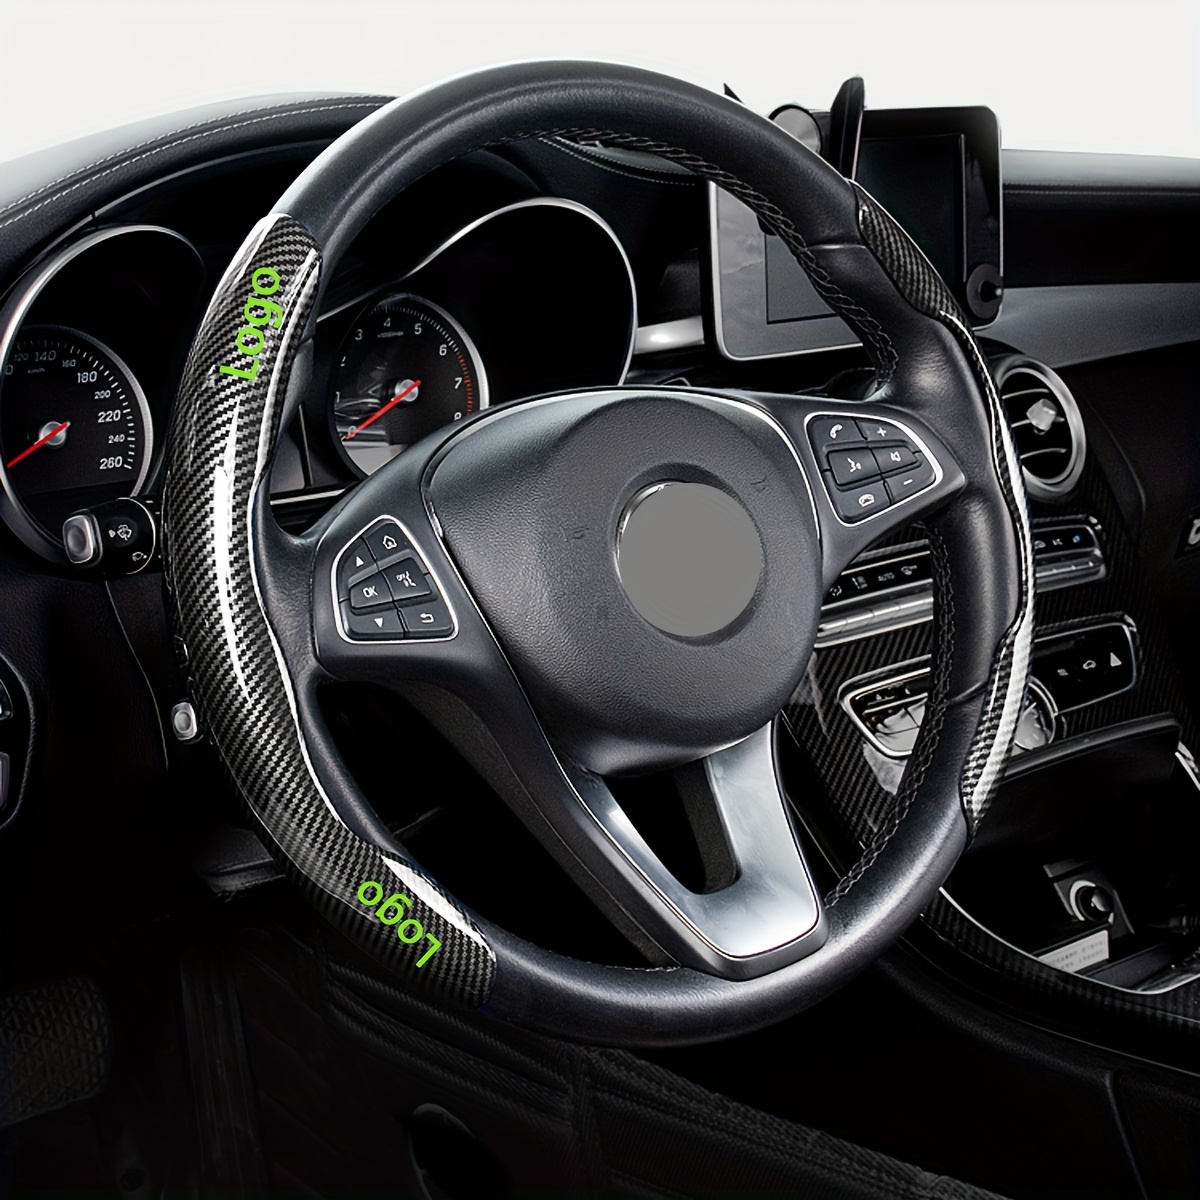 Housse auto pour l'intérieur, design GT3 Design - 911 GT3